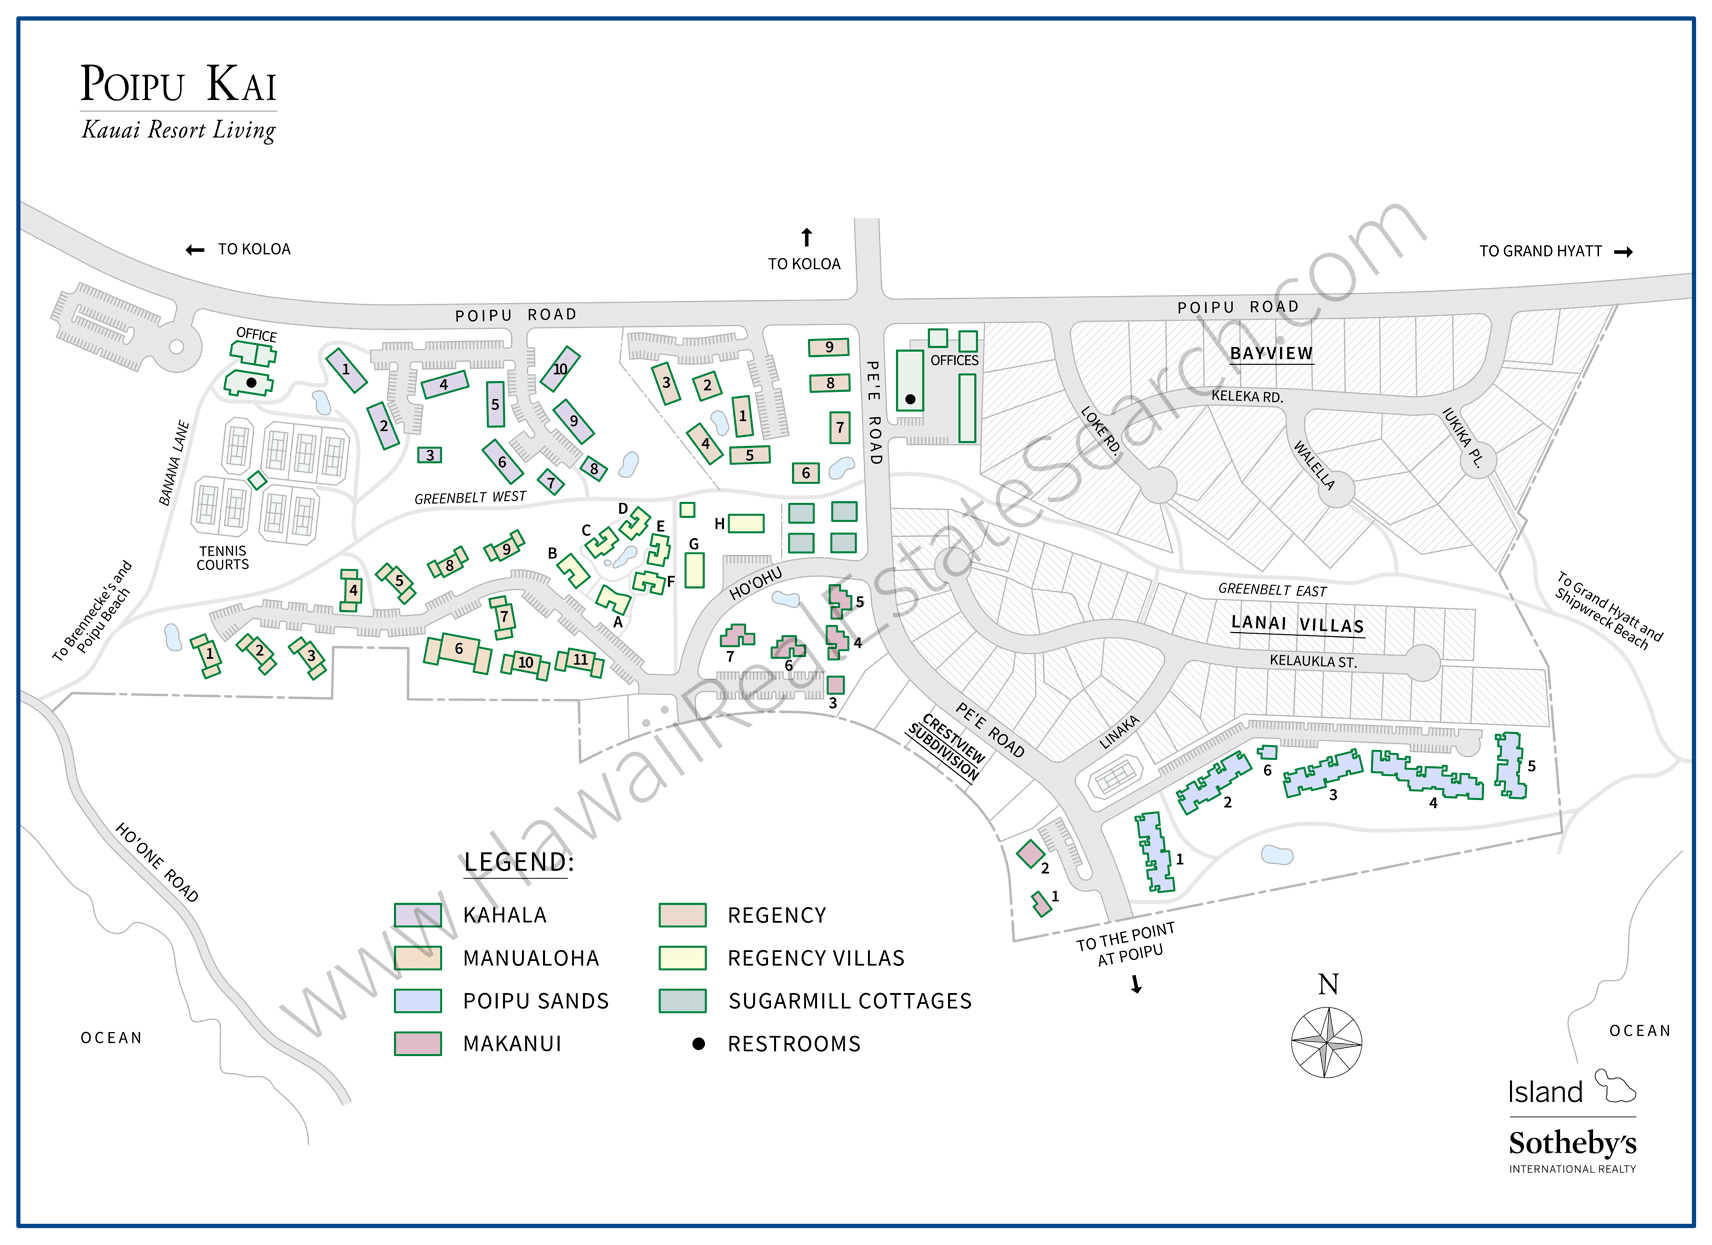 Poipu Kai Resort Map Updated